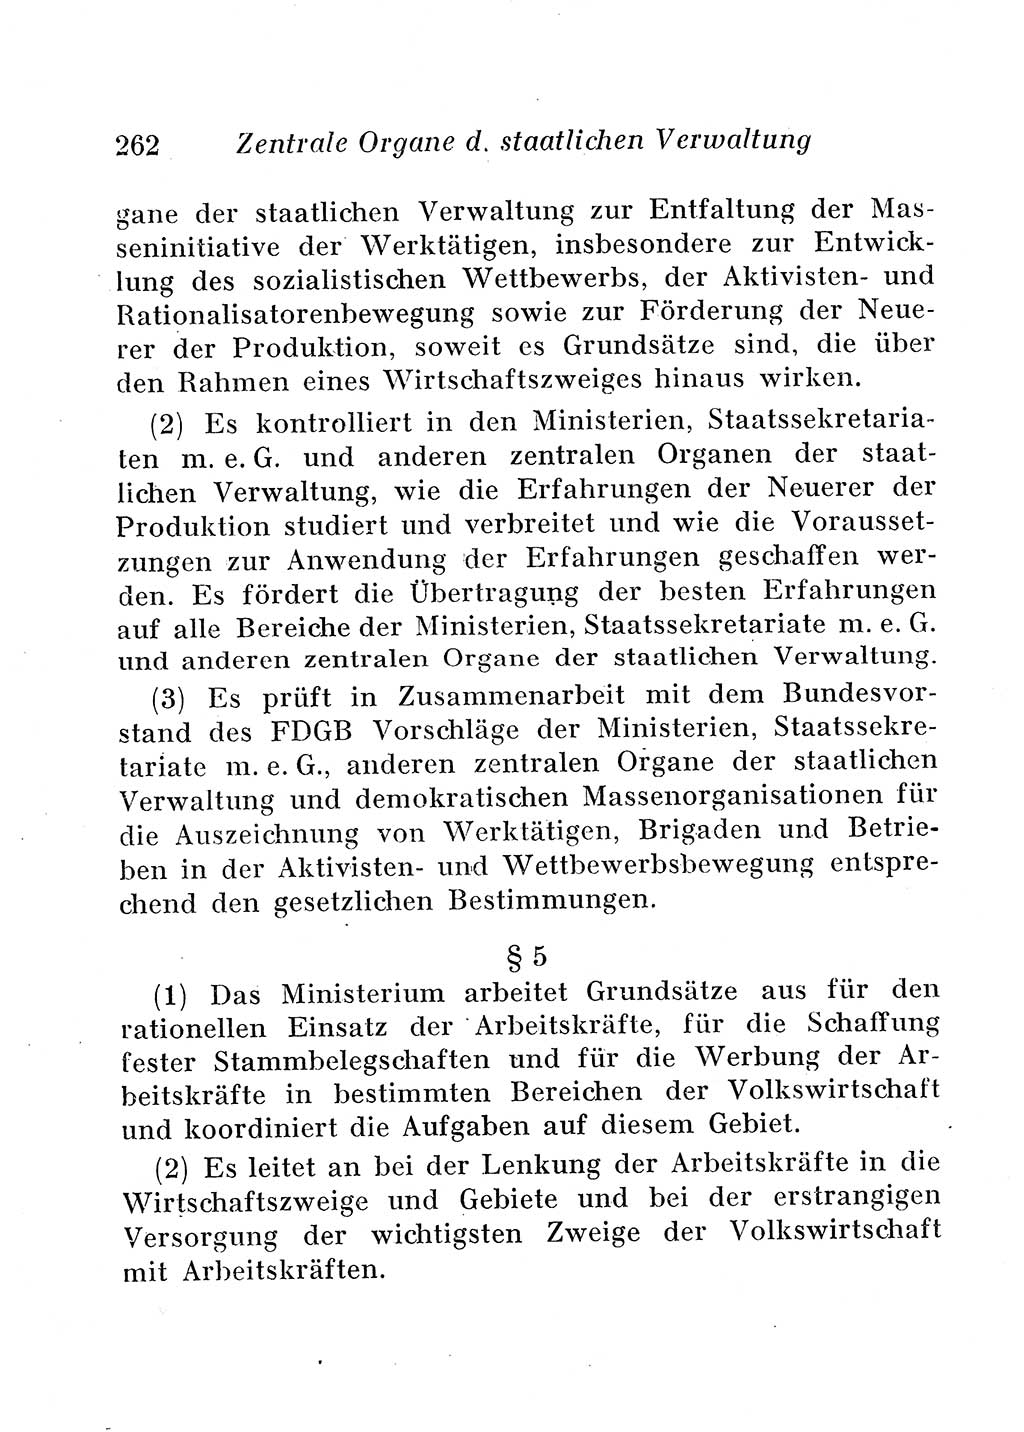 Staats- und verwaltungsrechtliche Gesetze der Deutschen Demokratischen Republik (DDR) 1958, Seite 262 (StVerwR Ges. DDR 1958, S. 262)